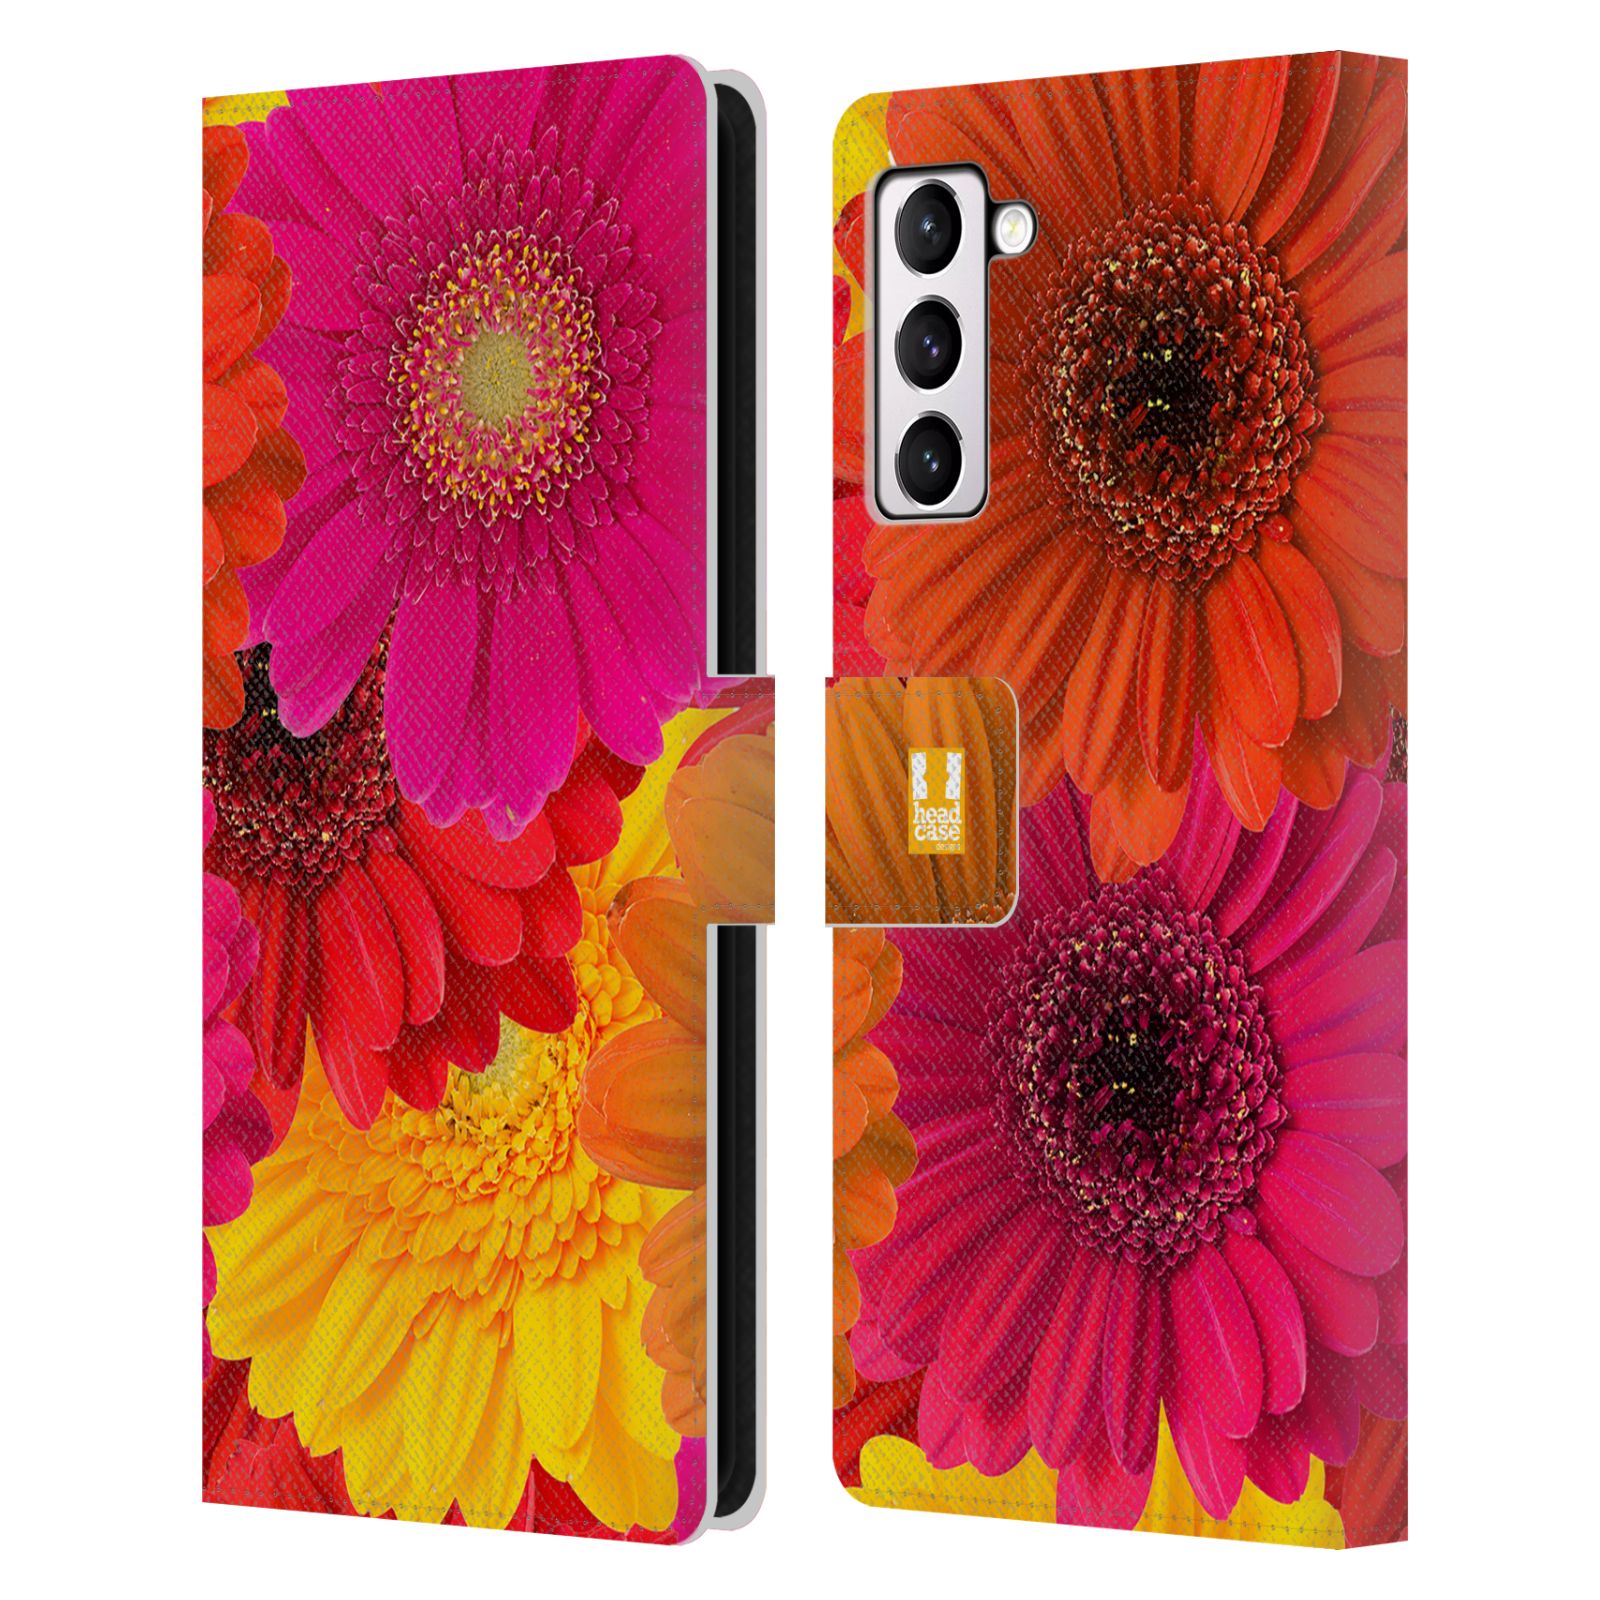 Pouzdro HEAD CASE na mobil Samsung Galaxy S21+ 5G / S21 PLUS 5G květy foto fialová, oranžová GERBERA